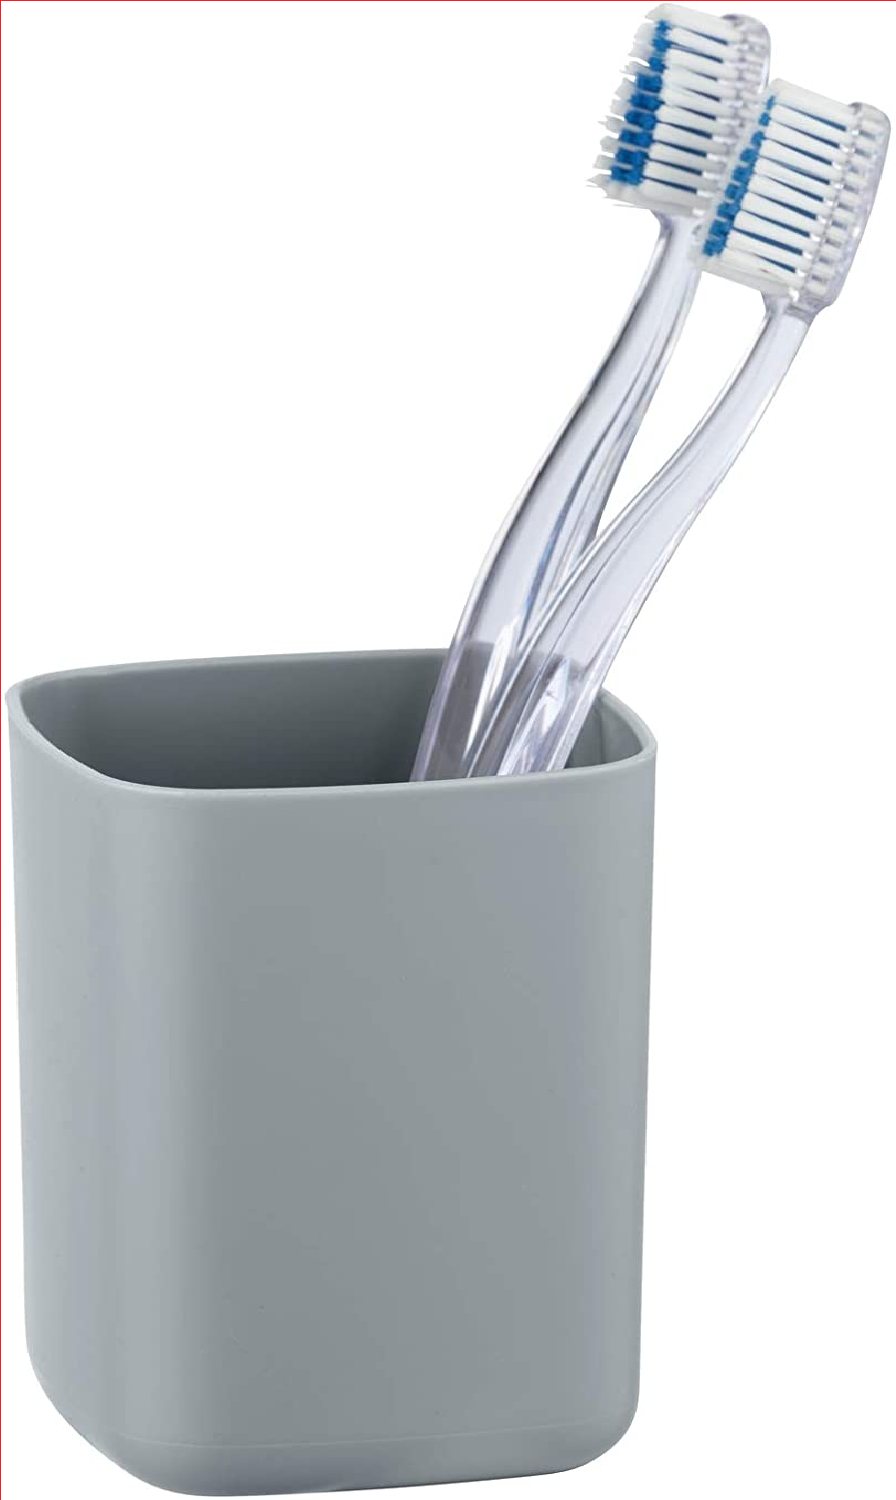 Zahnputzbecher Barcelona Grau - Zahnbürstenhalter für Zahnbürste und Zahnpasta, absolut bruchsicher, Kunststoff (TPE), 7 x 10 x 7 cm, Grau